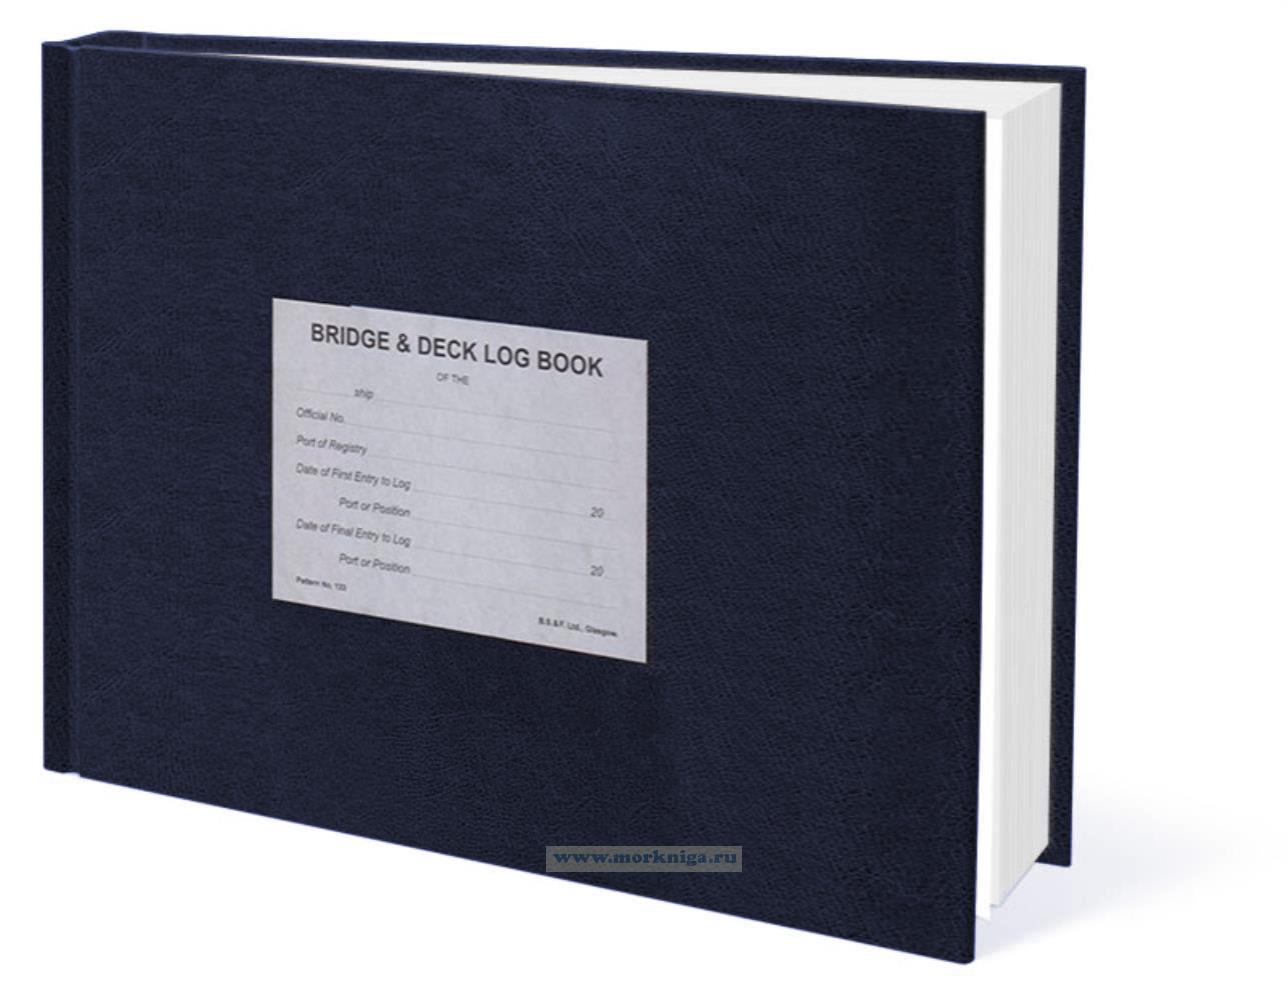 Bridge & Deck Log Book. Вахтенный журнал мостика и палубы